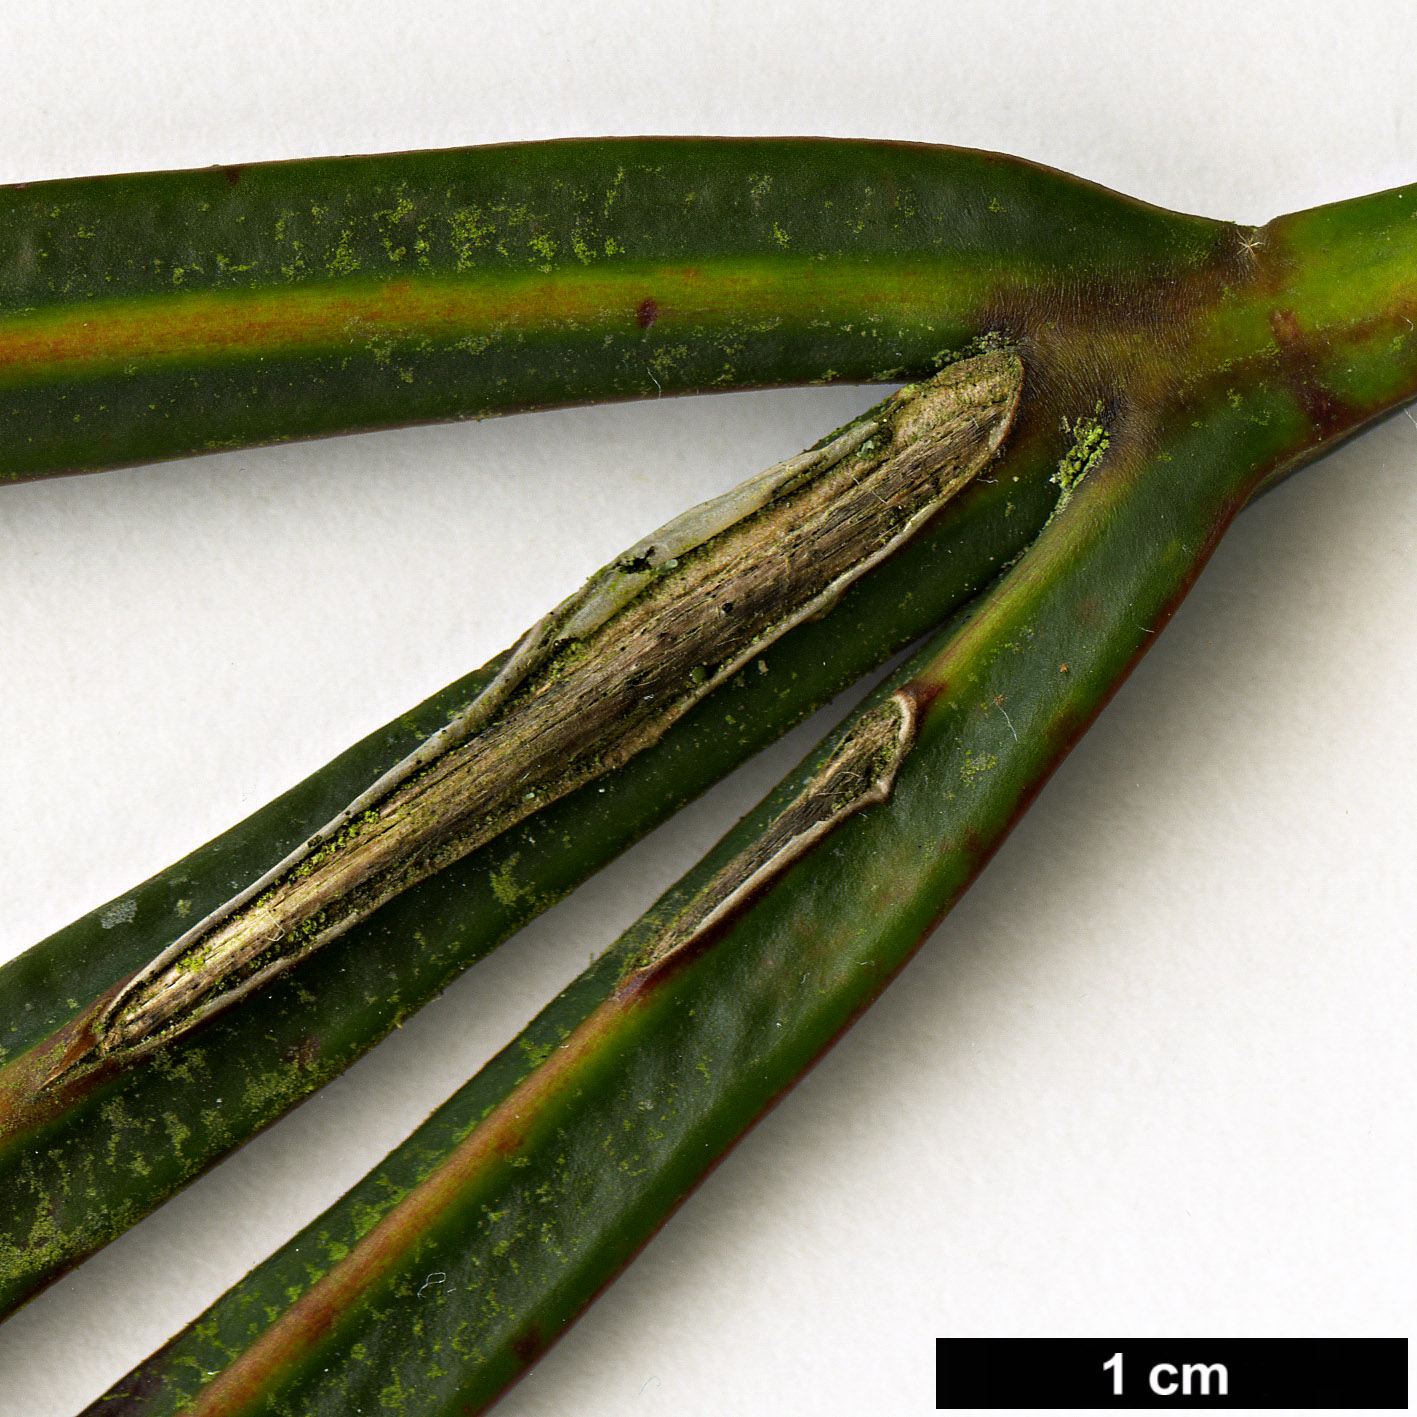 High resolution image: Family: Araliaceae - Genus: Pseudopanax - Taxon: crassifolius